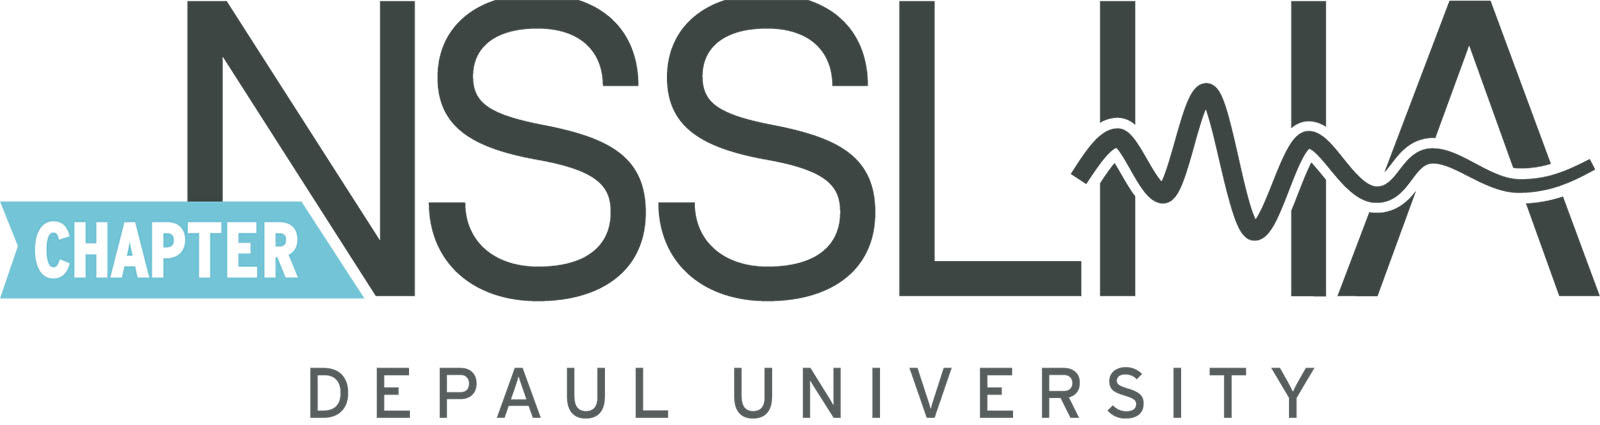 DePaul NSSLHA logo